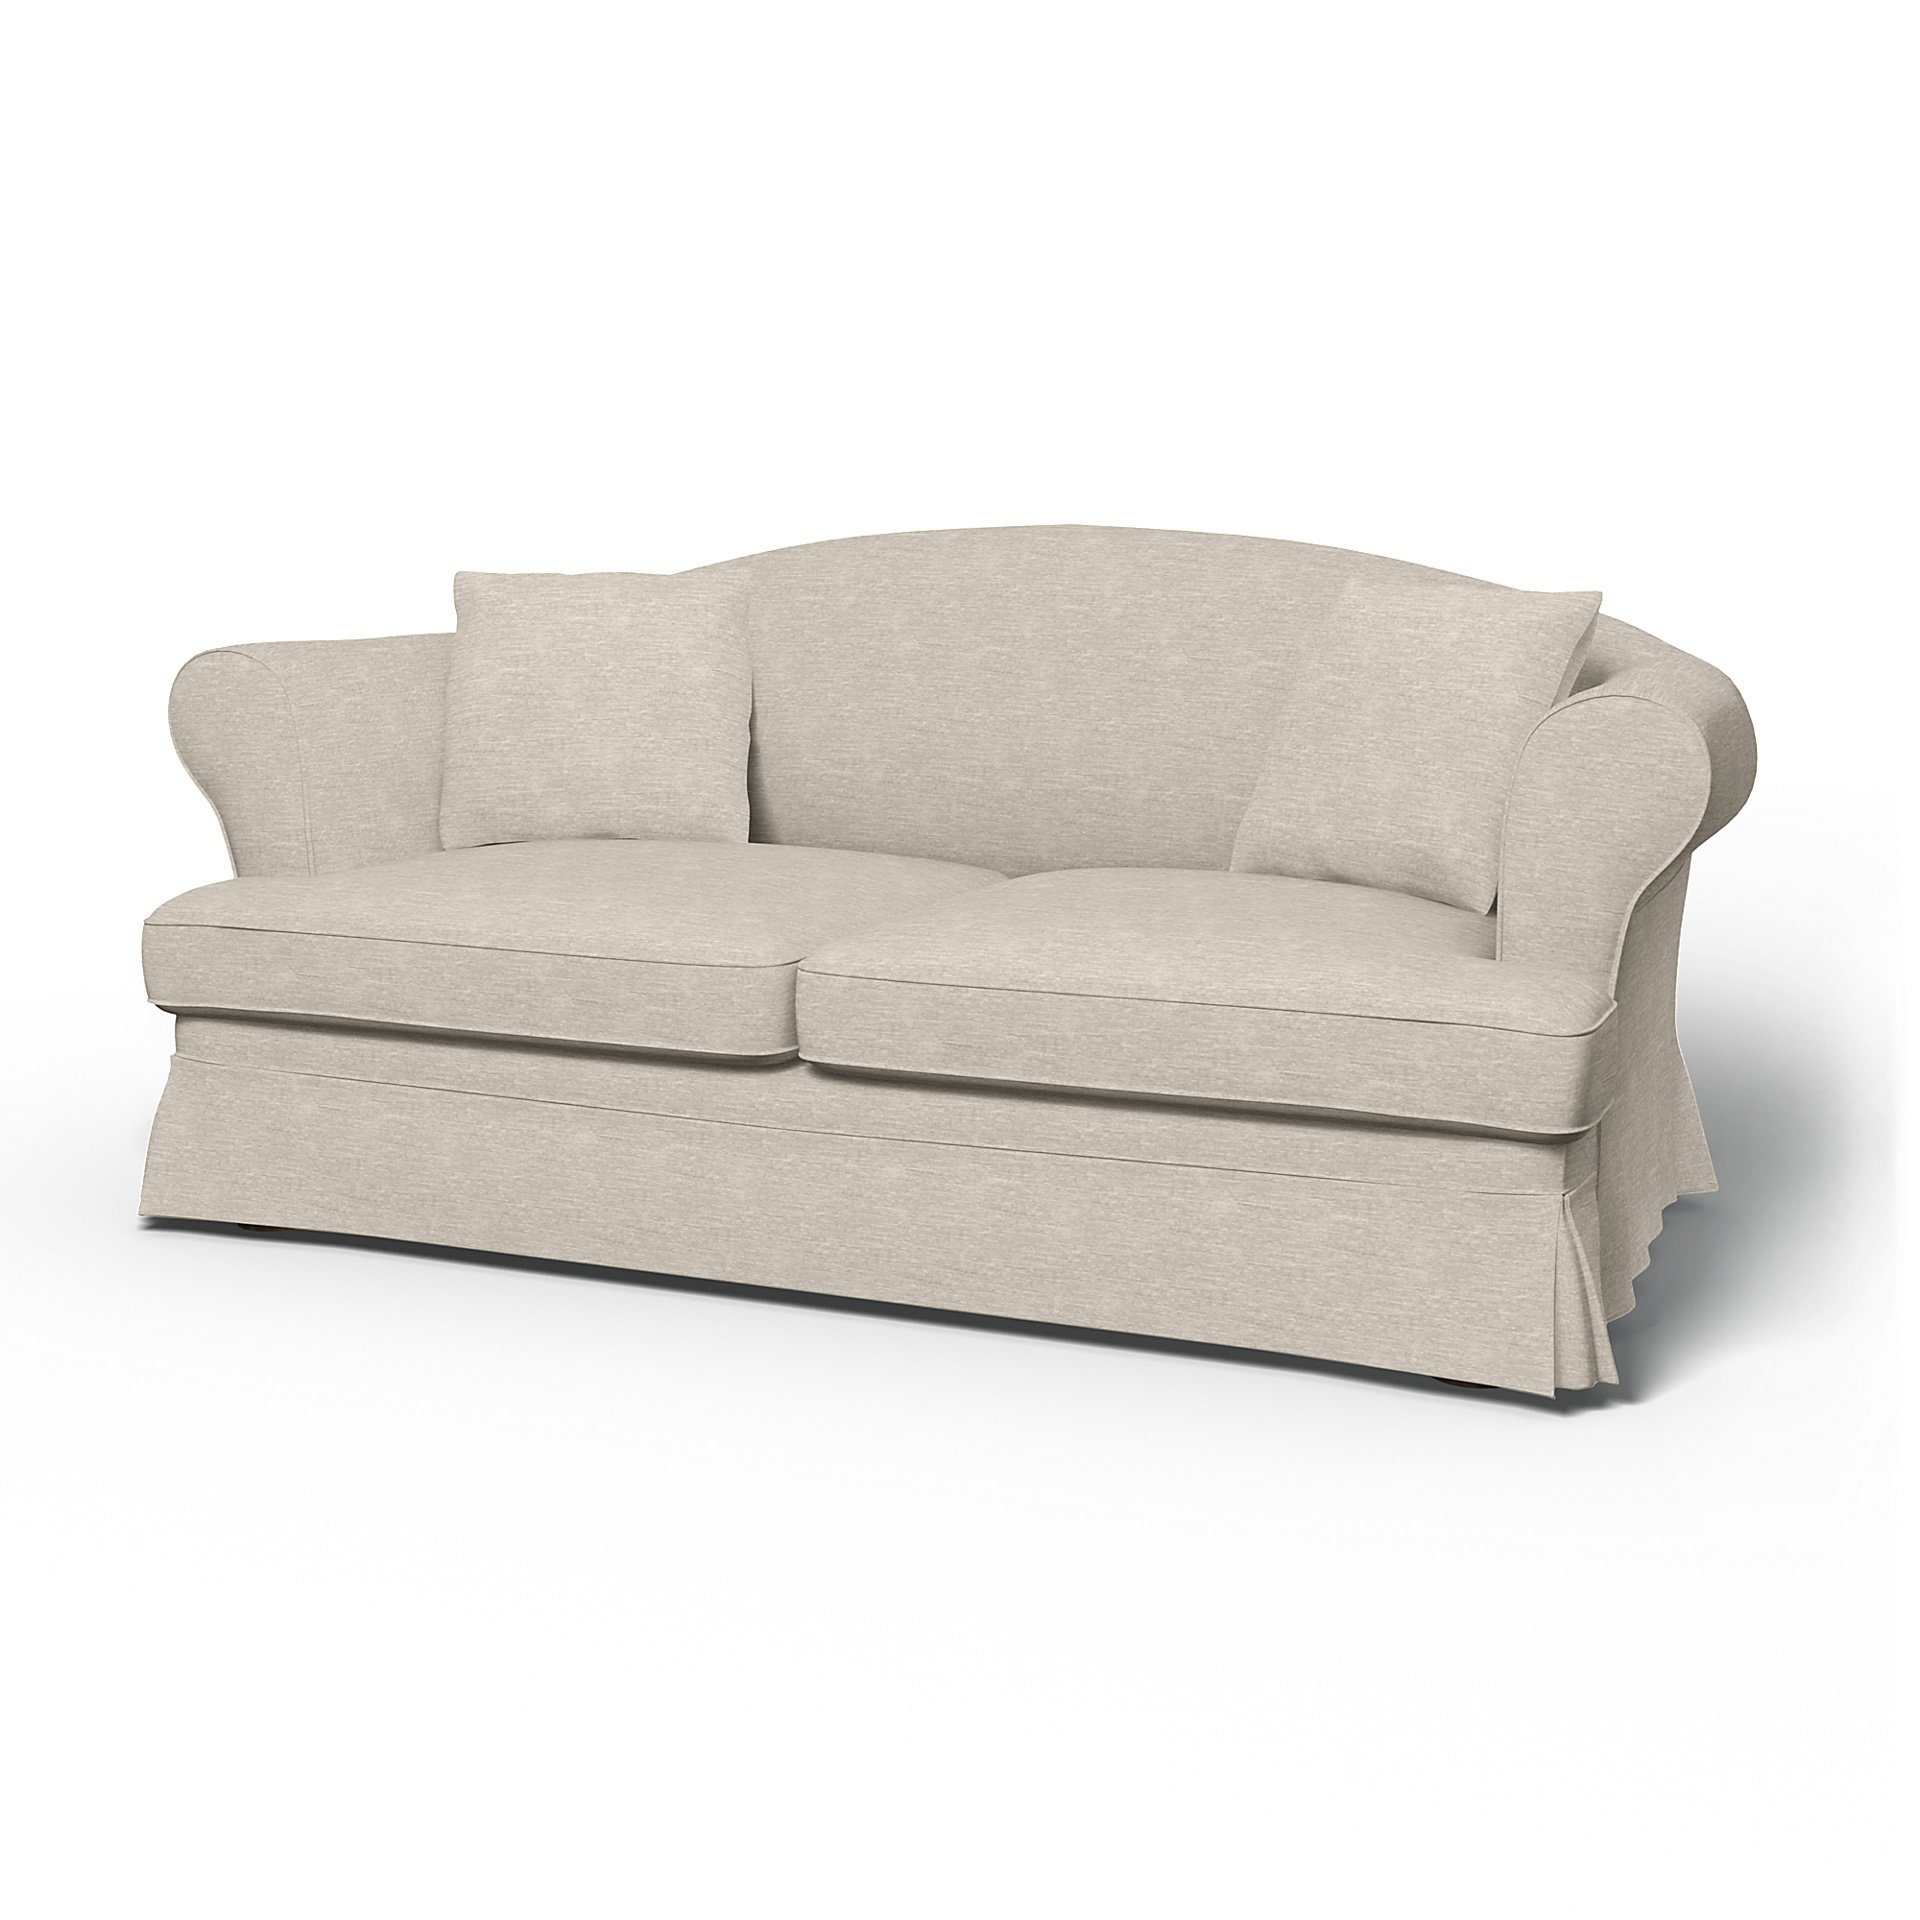 IKEA - Sundborn Sofa Bed Cover, Natural White, Velvet - Bemz